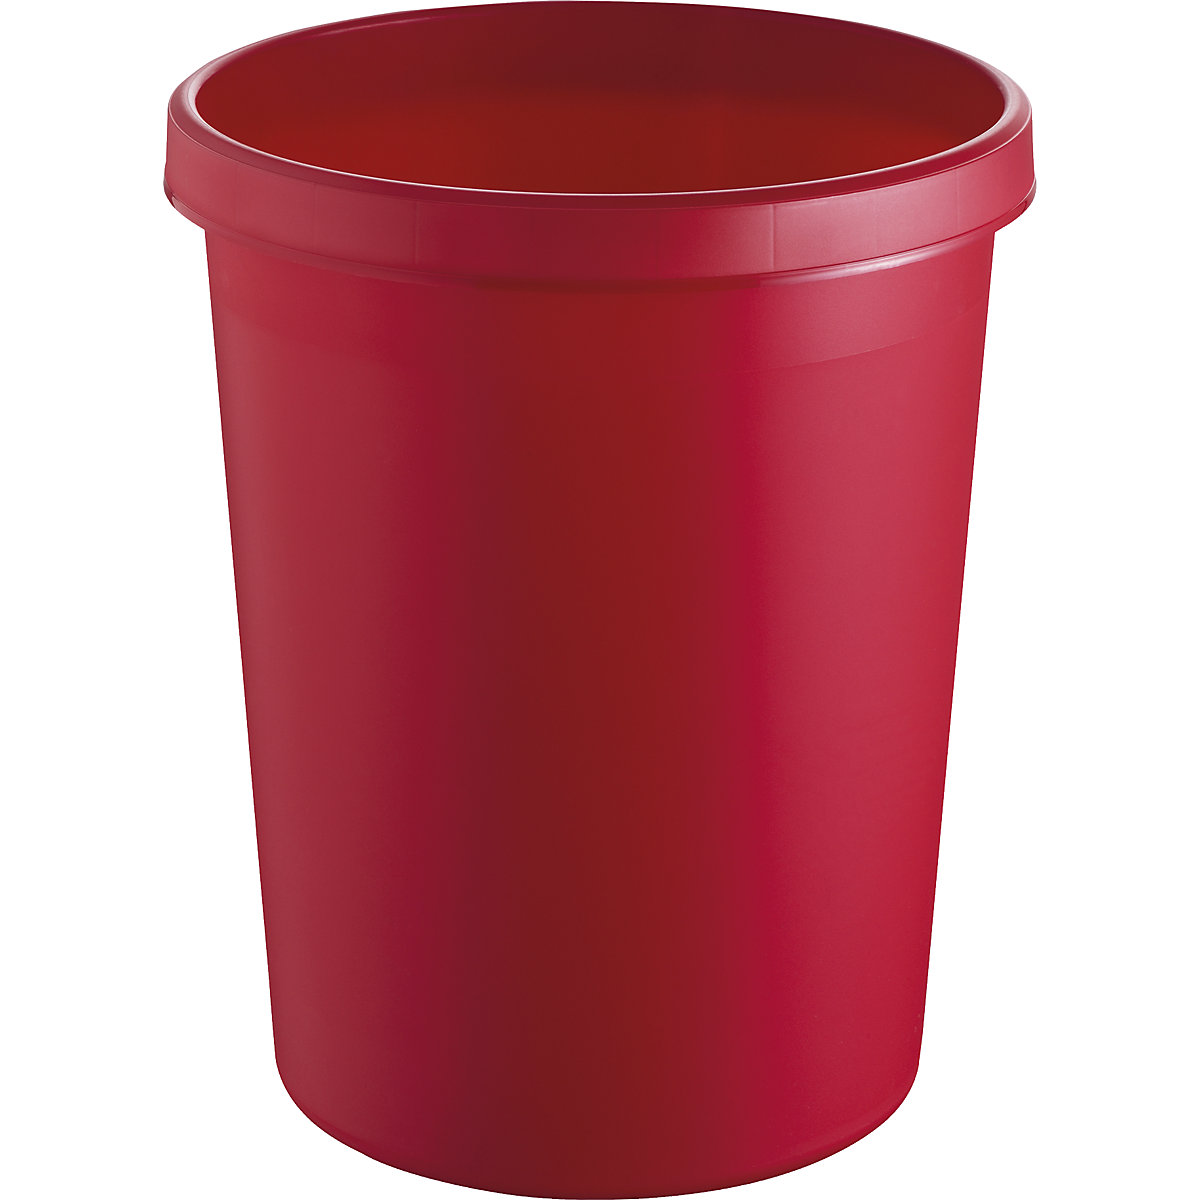 helit – Corbeille à papier en plastique, capacité 45 l, h x Ø 480 x 390 mm, coloris rouge, lot de 2